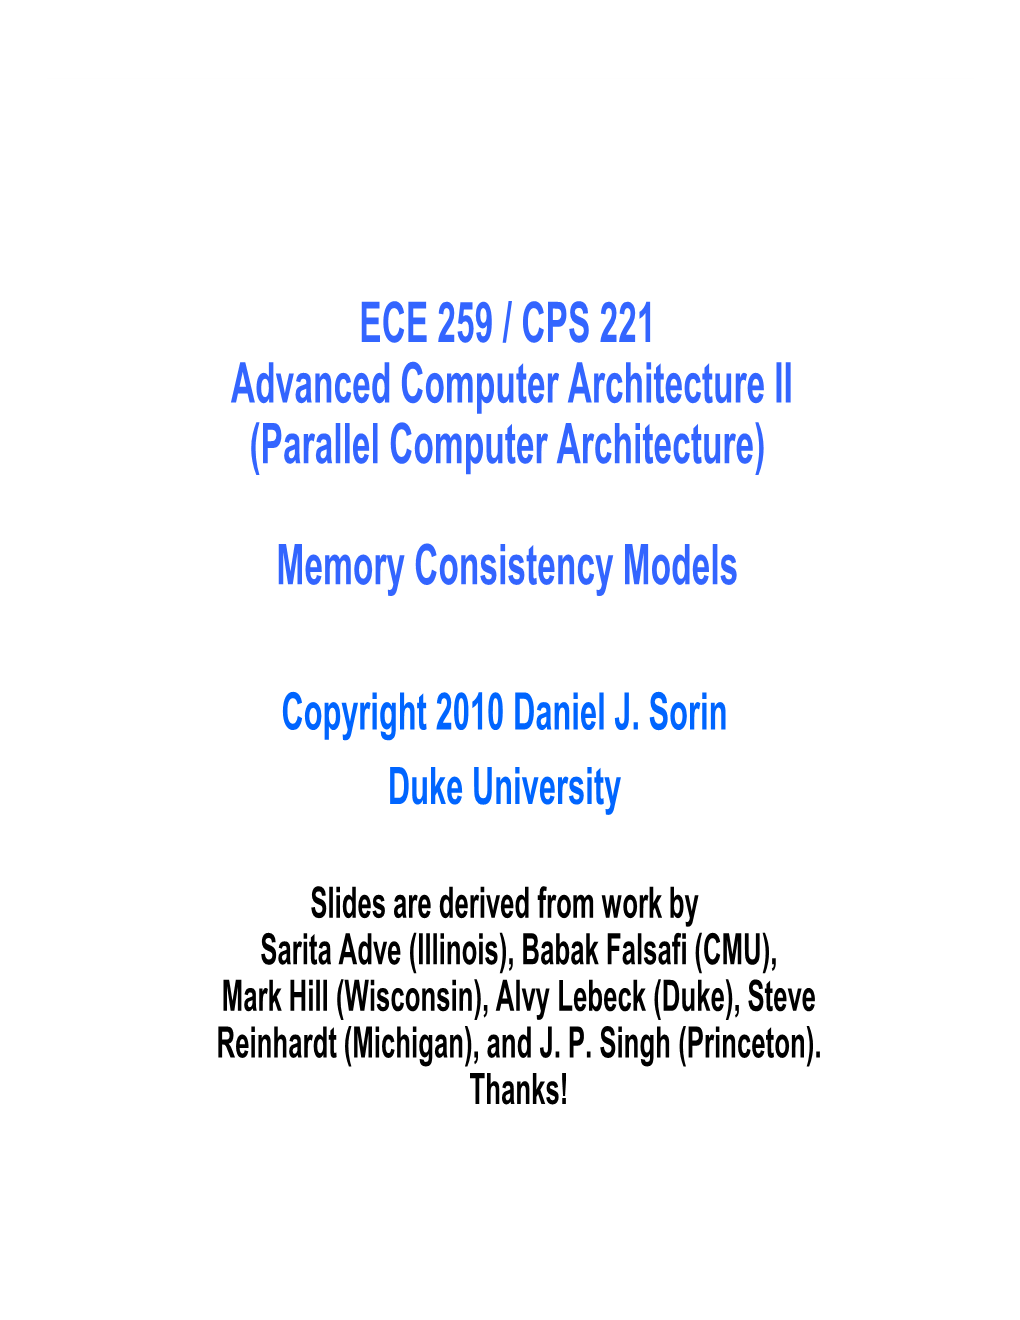 ECE 259 / CPS 221 Advanced Computer Architecture II (Parallel Computer Architecture)